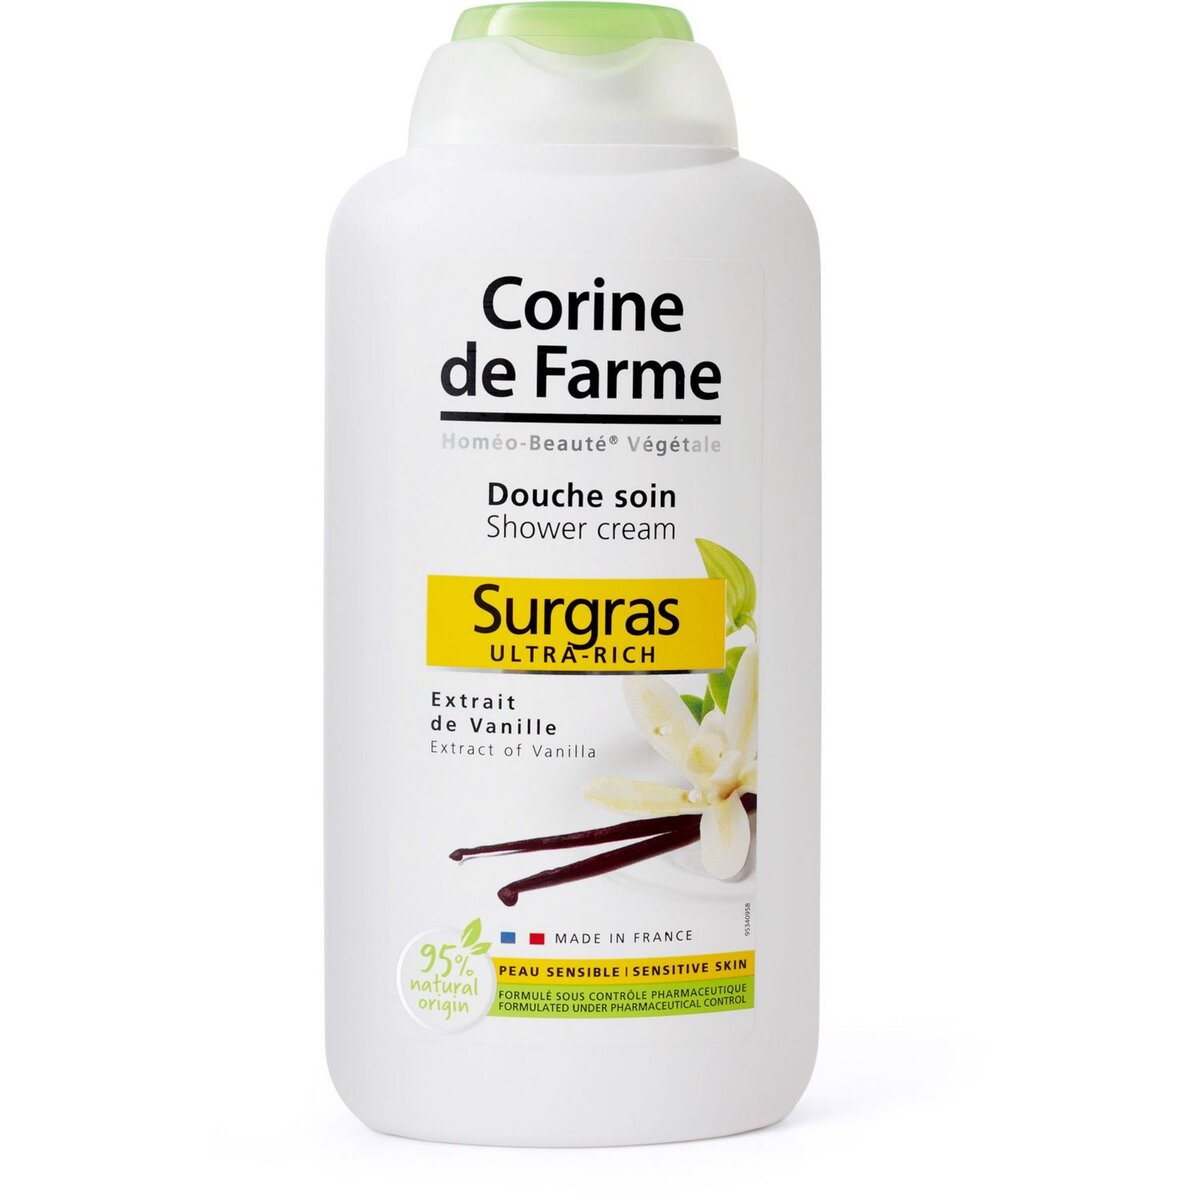 CORINE DE FARME Gel douche soin surgras extrait de vanille peau sensible 500ml